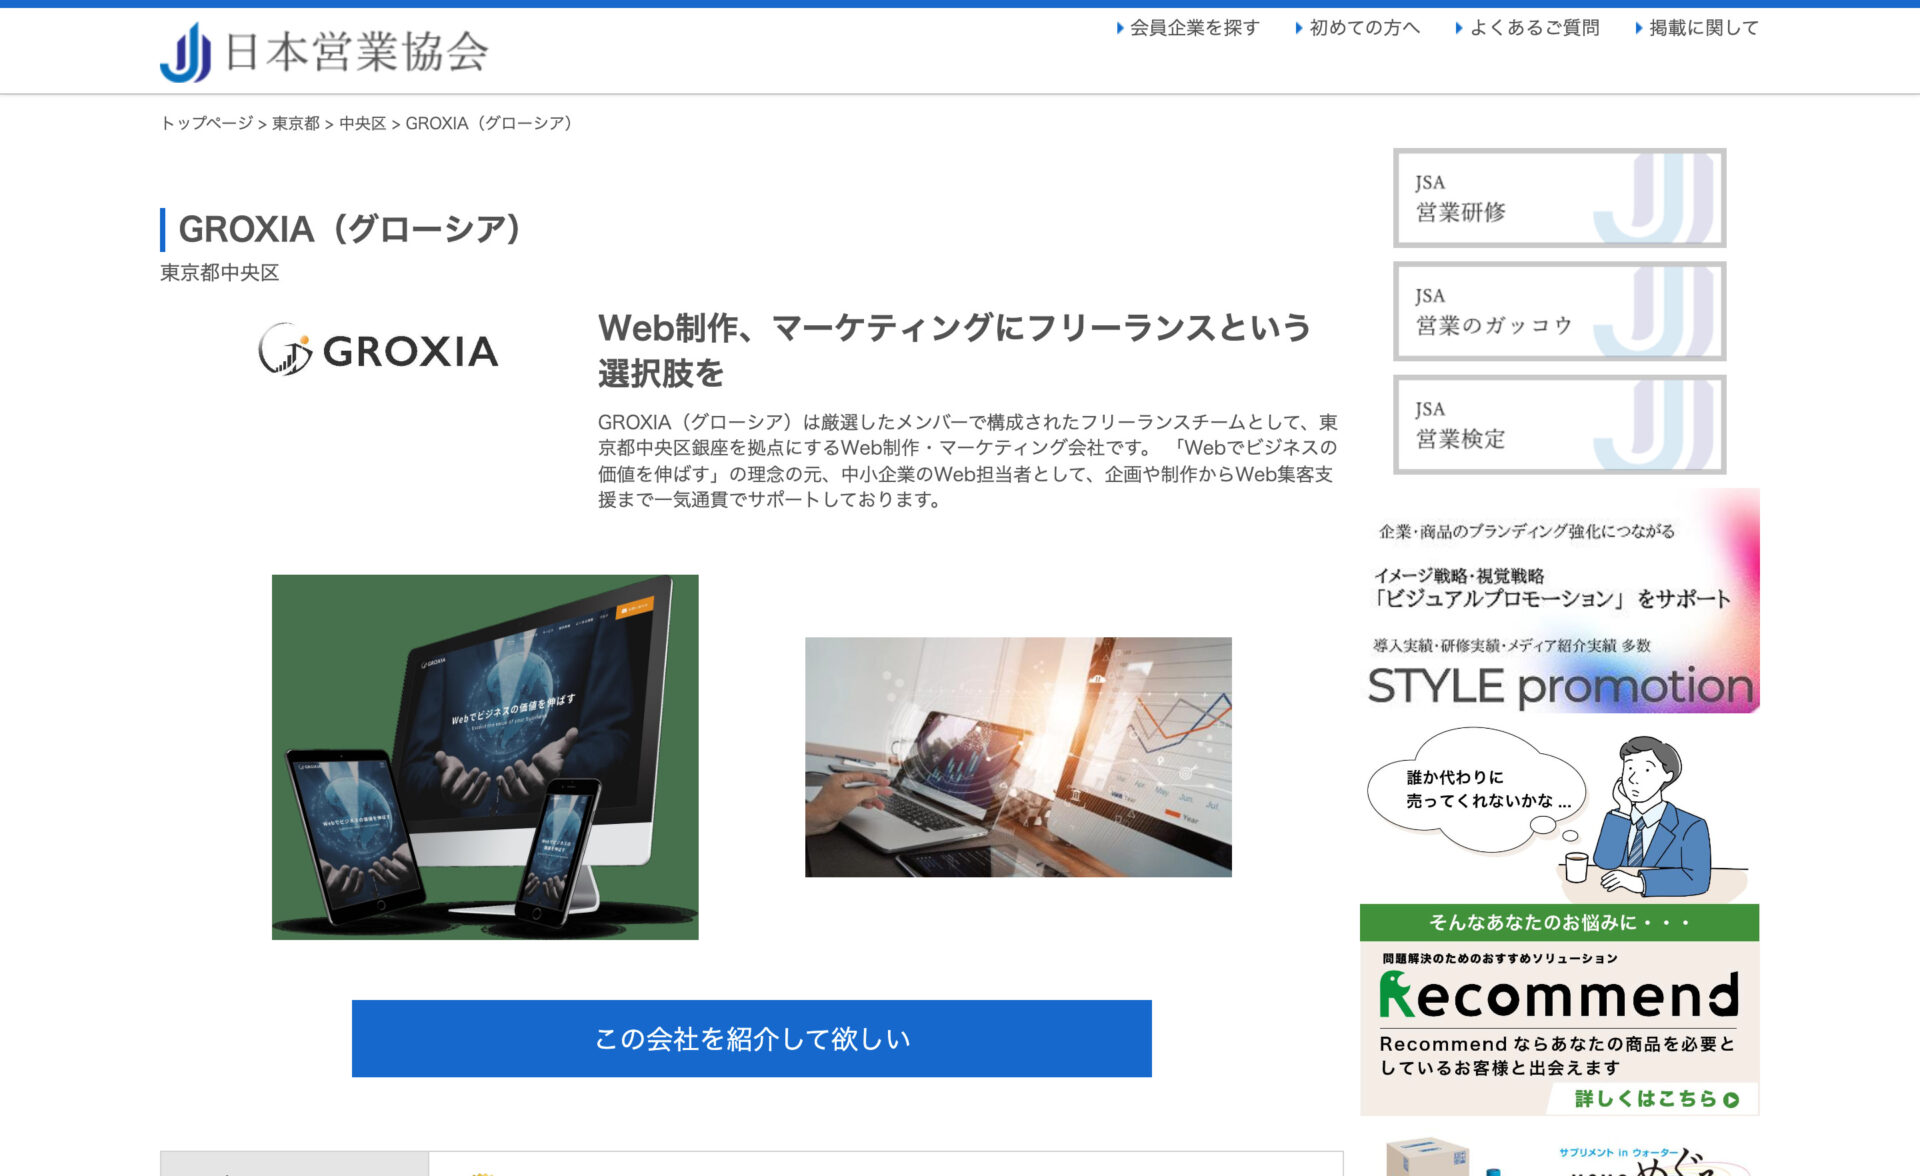 株式会社ビジネスコネクション様が運営する、日本営業協会にGROXIAを掲載していただきました。